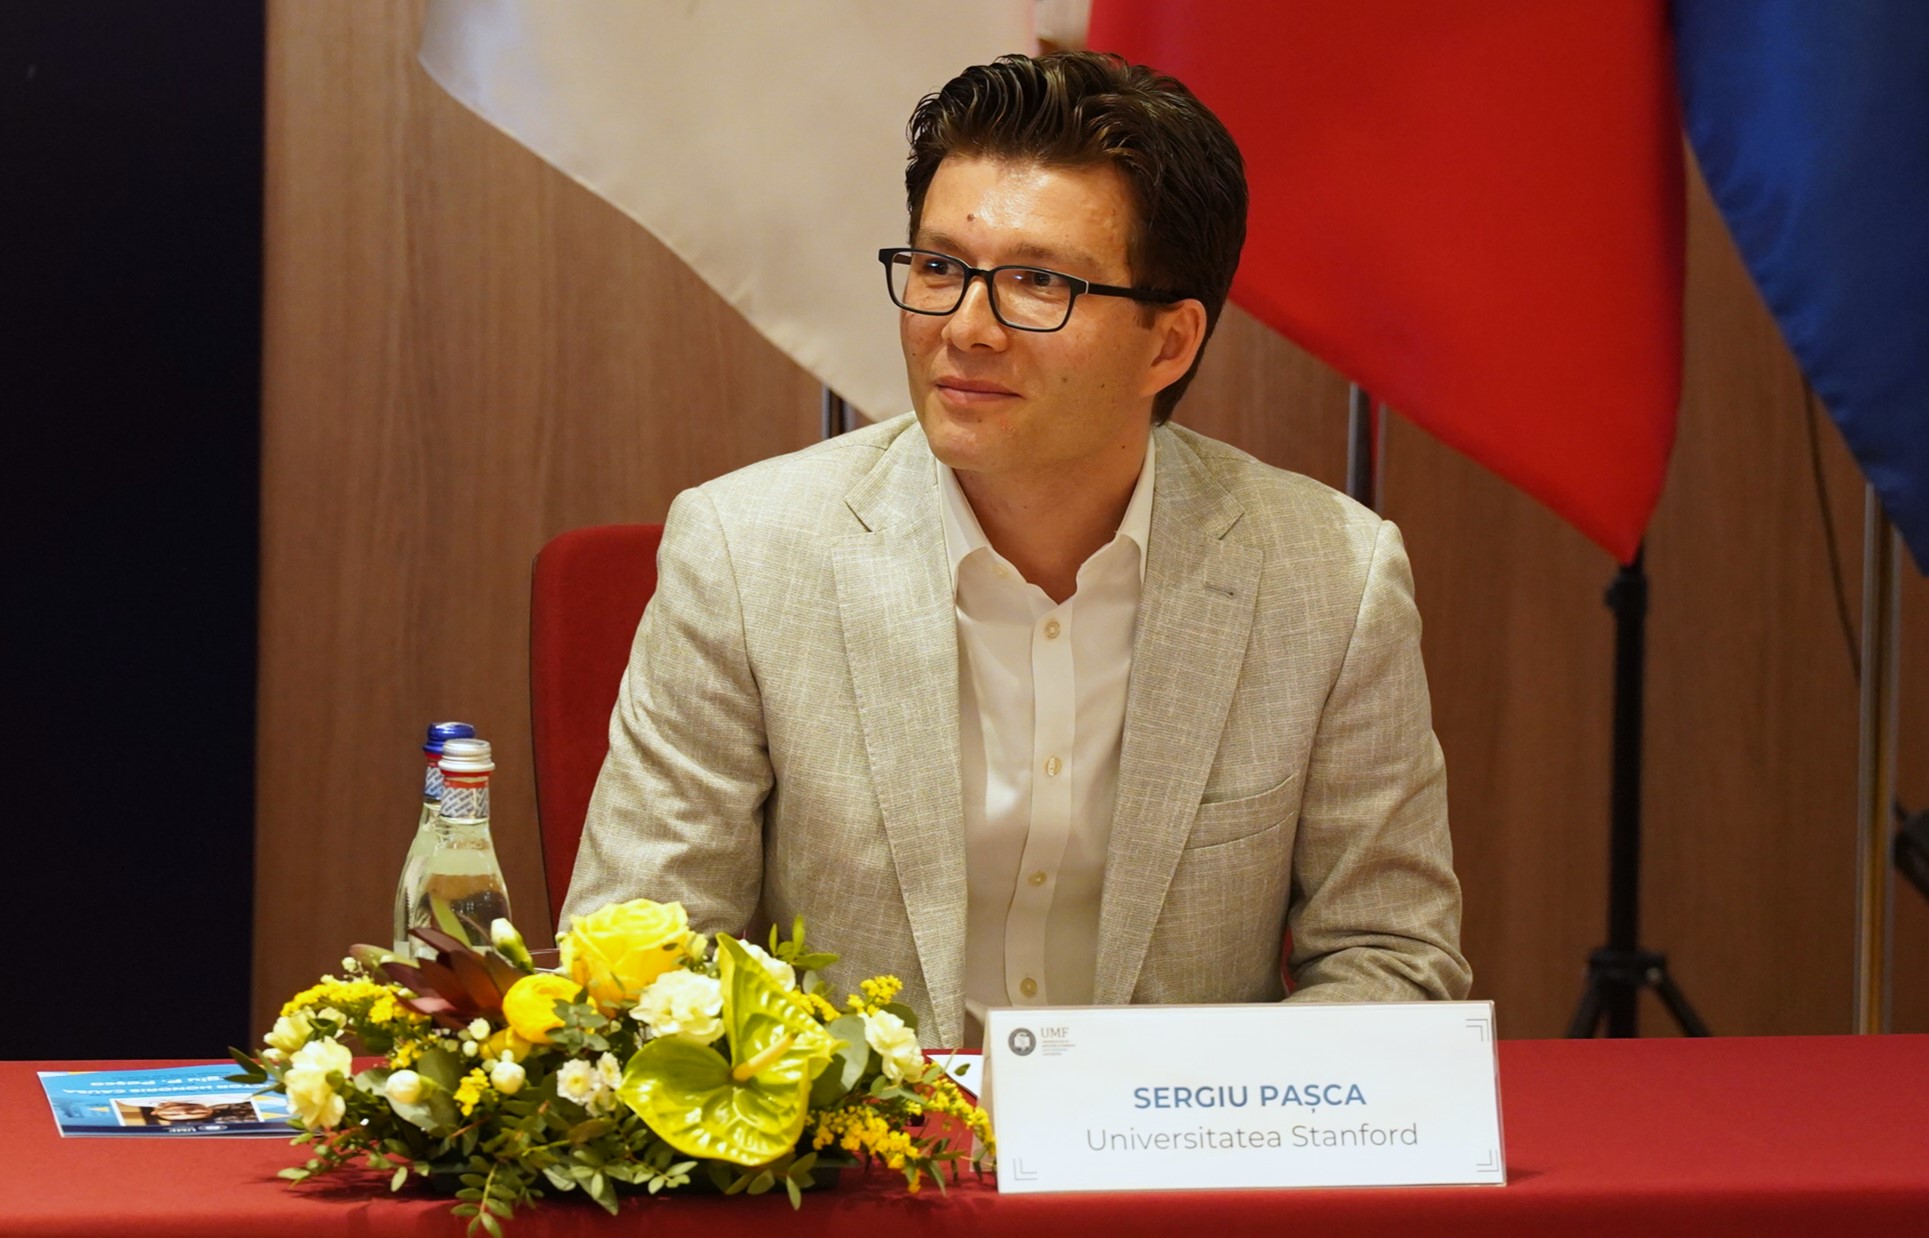 Cercetătorul Sergiu Pașca a primit titlul de Doctor Honoris Causa al UMF ”Iuliu Hațieganu” Cluj-Napoca